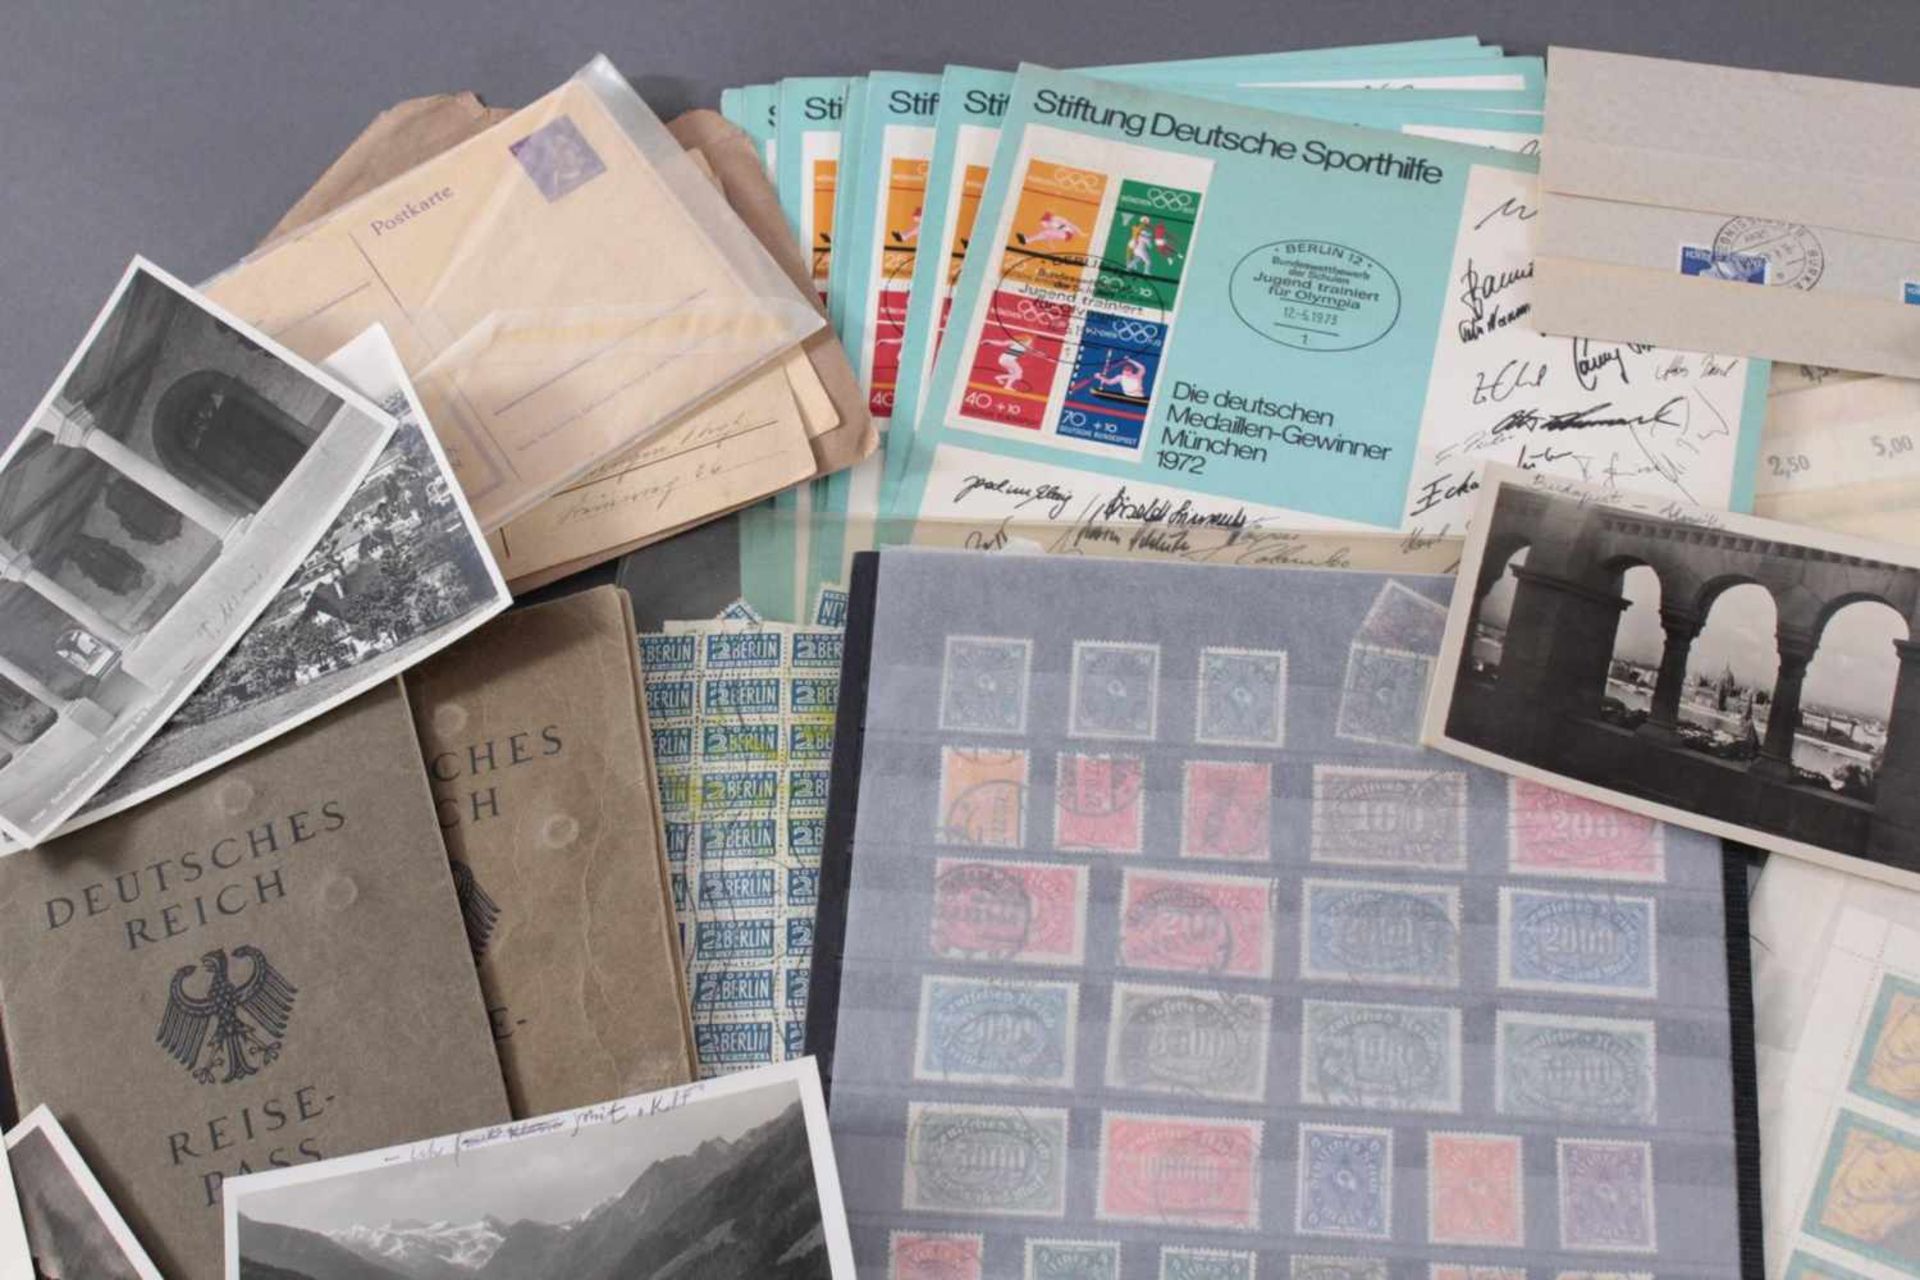 Kleines Konvolut Briefmarken, Postkarten, Reisepässe...2 Reisepässe Deutsches Reich, Briefmarken auf - Bild 2 aus 4